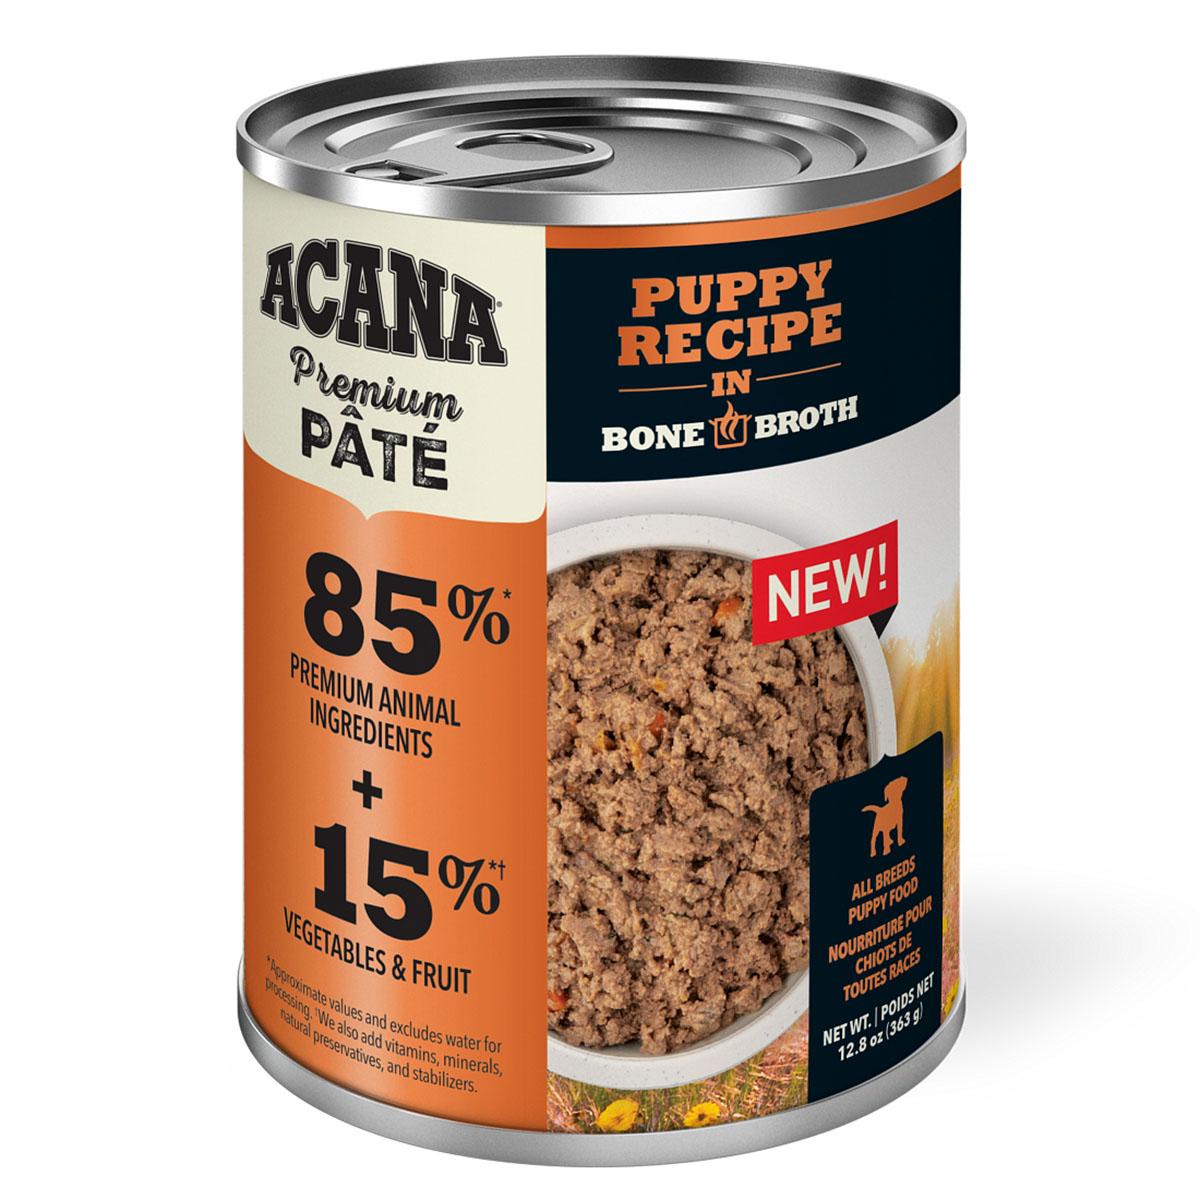 Acana Premium Pate Puppy Recipe in Bone Broth Canned Dog Food